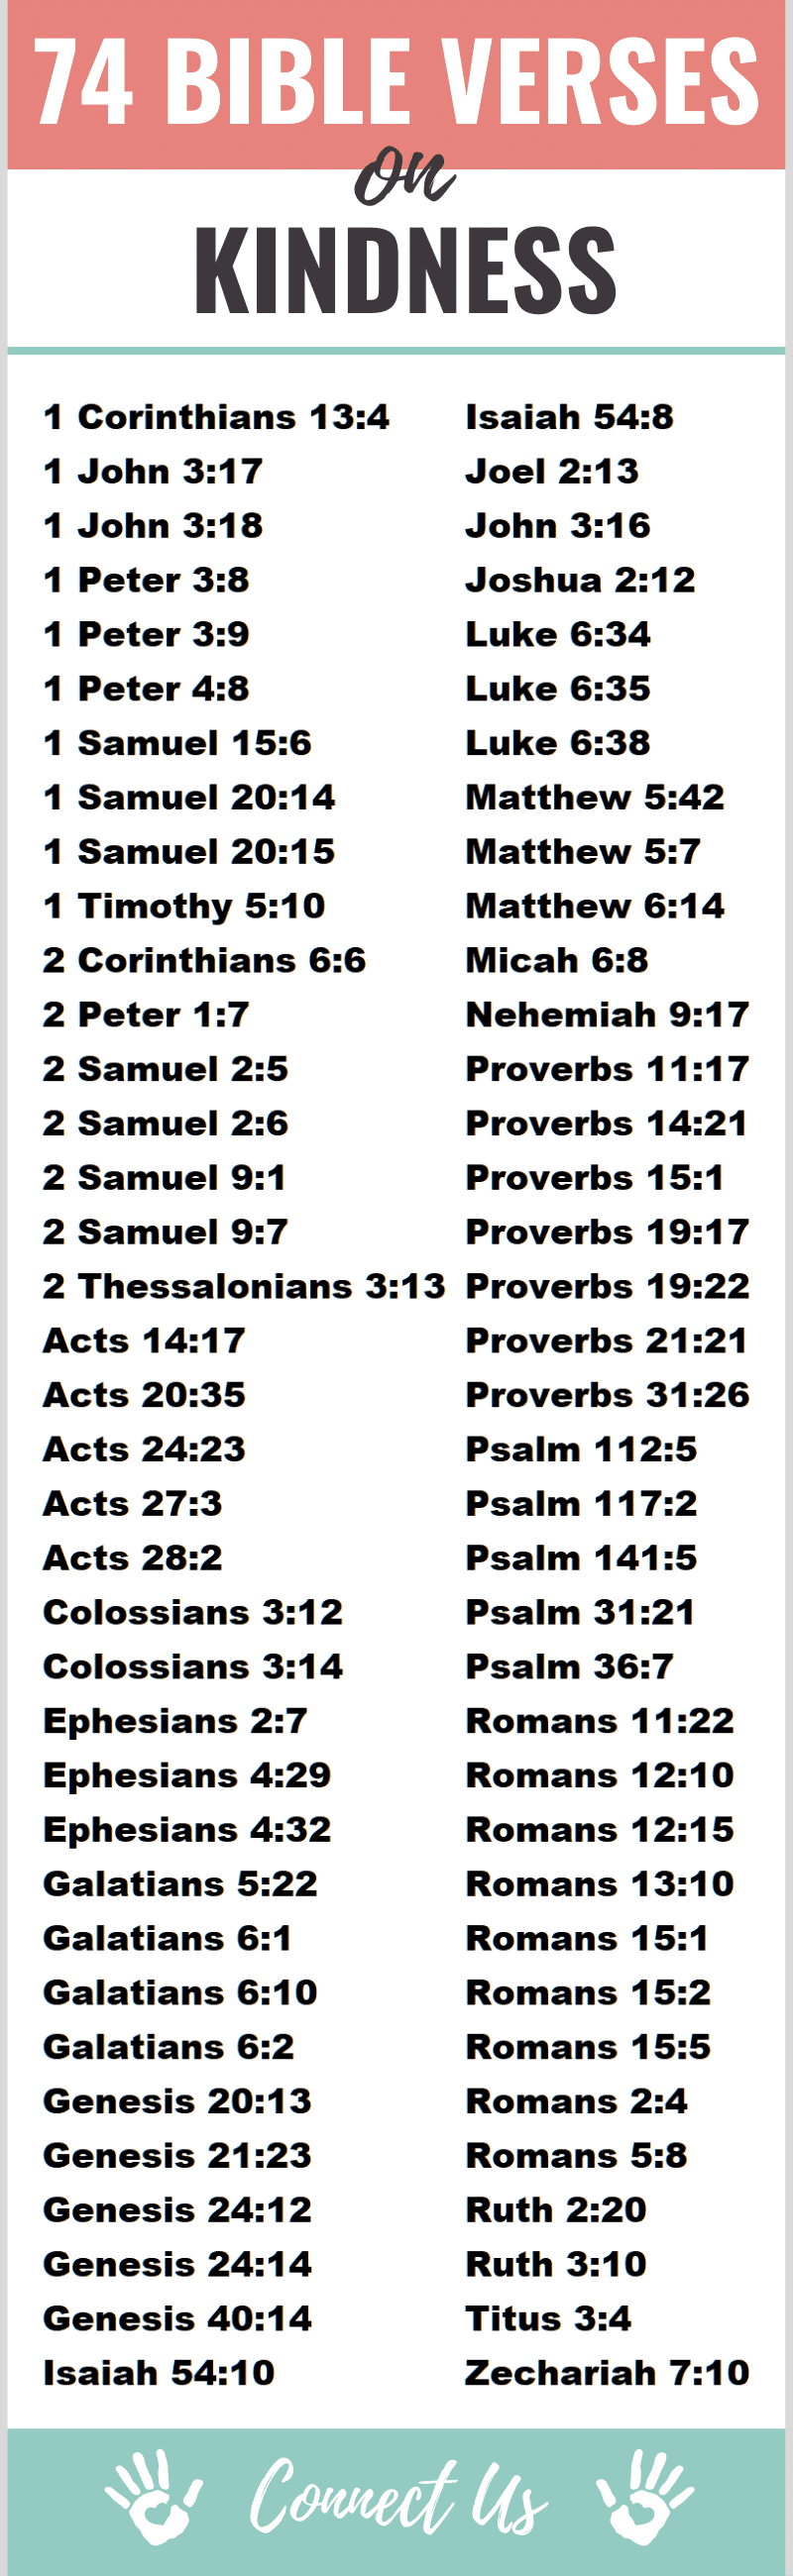 Versículos bíblicos sobre la bondad